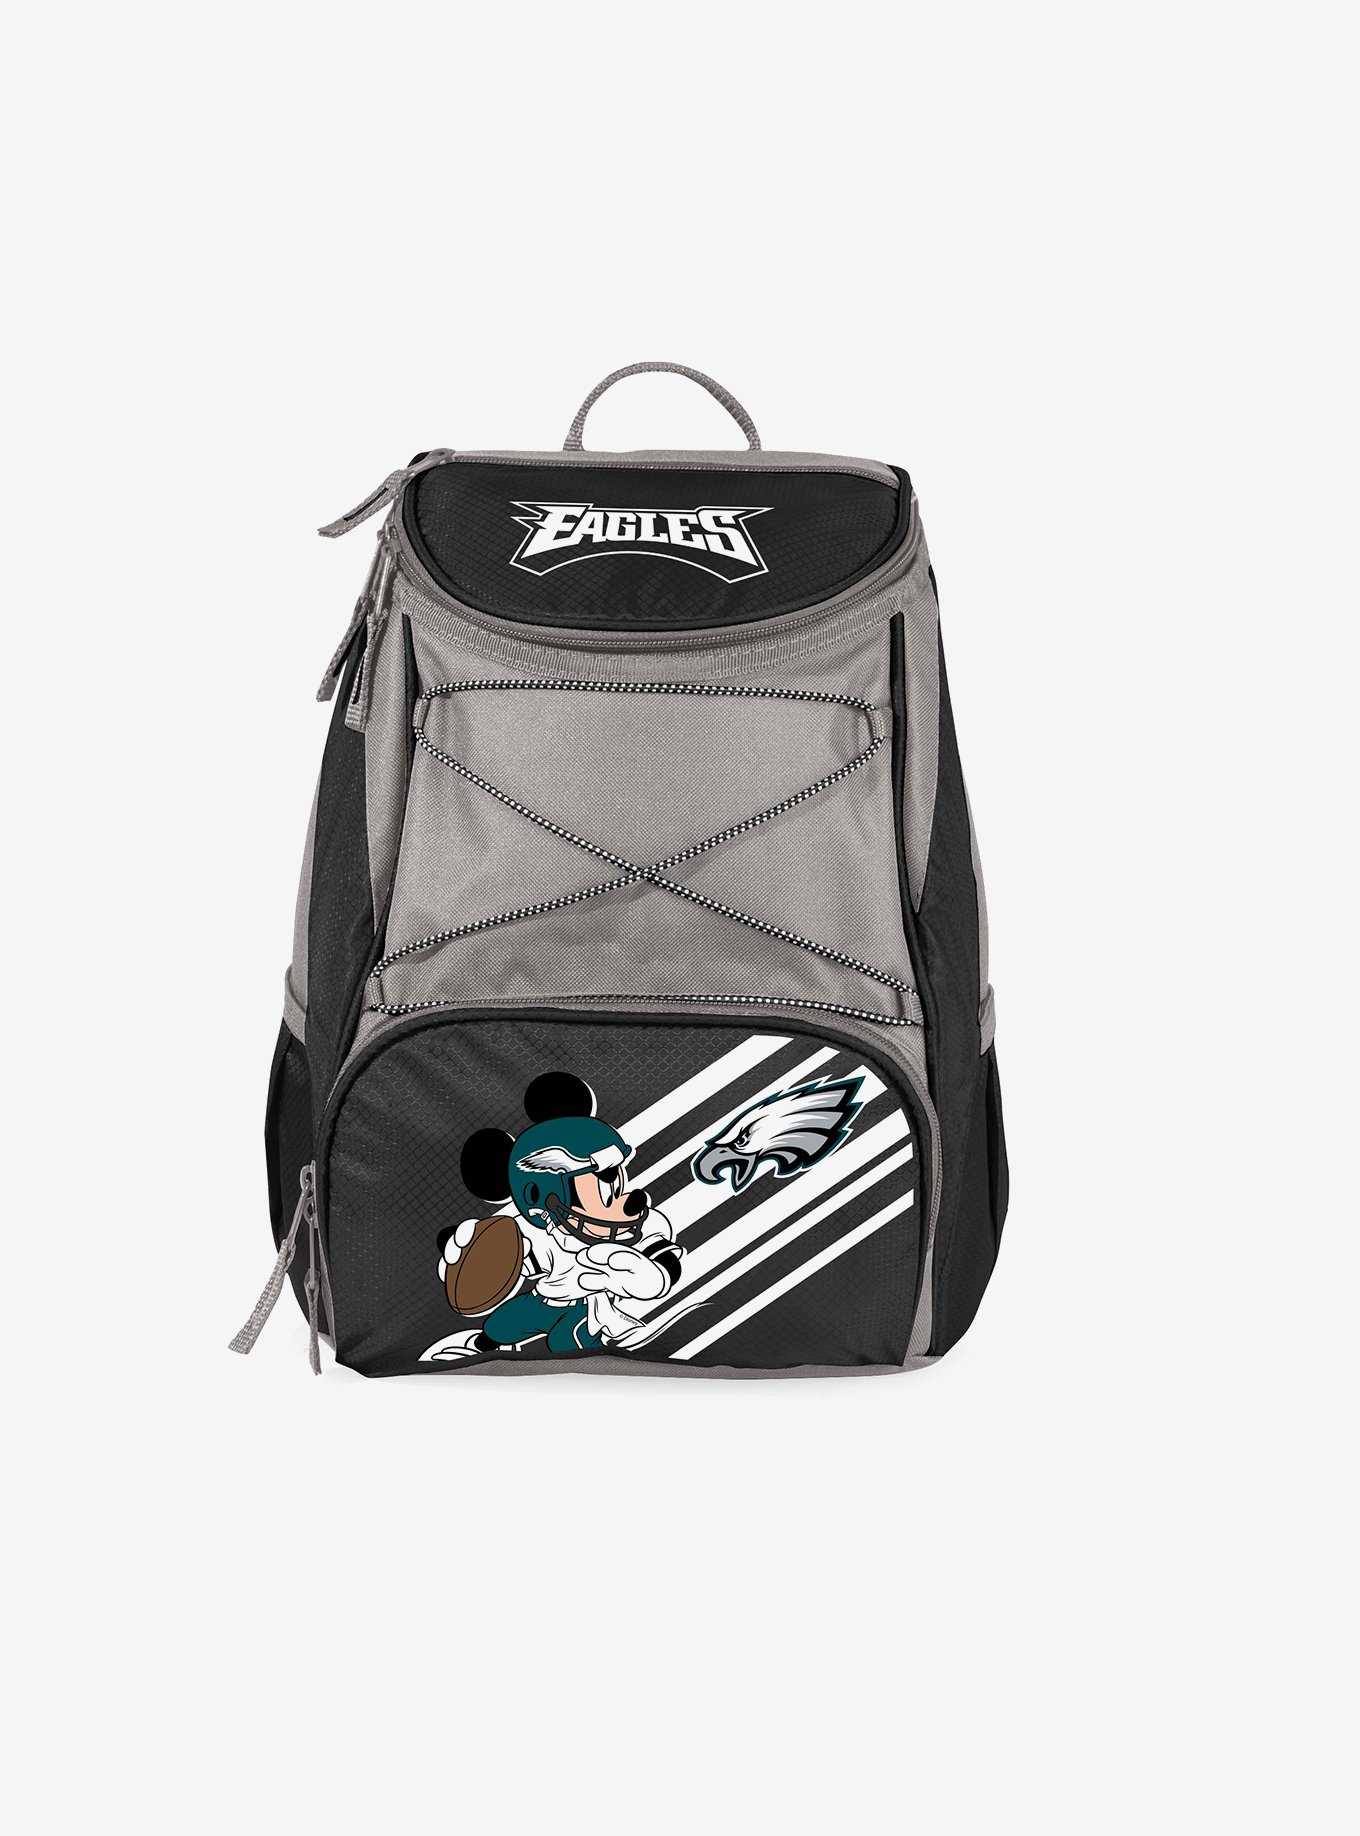 Disney Mickey Mouse NFL Phi Eagles Backpack Cooler Backpack, , hi-res